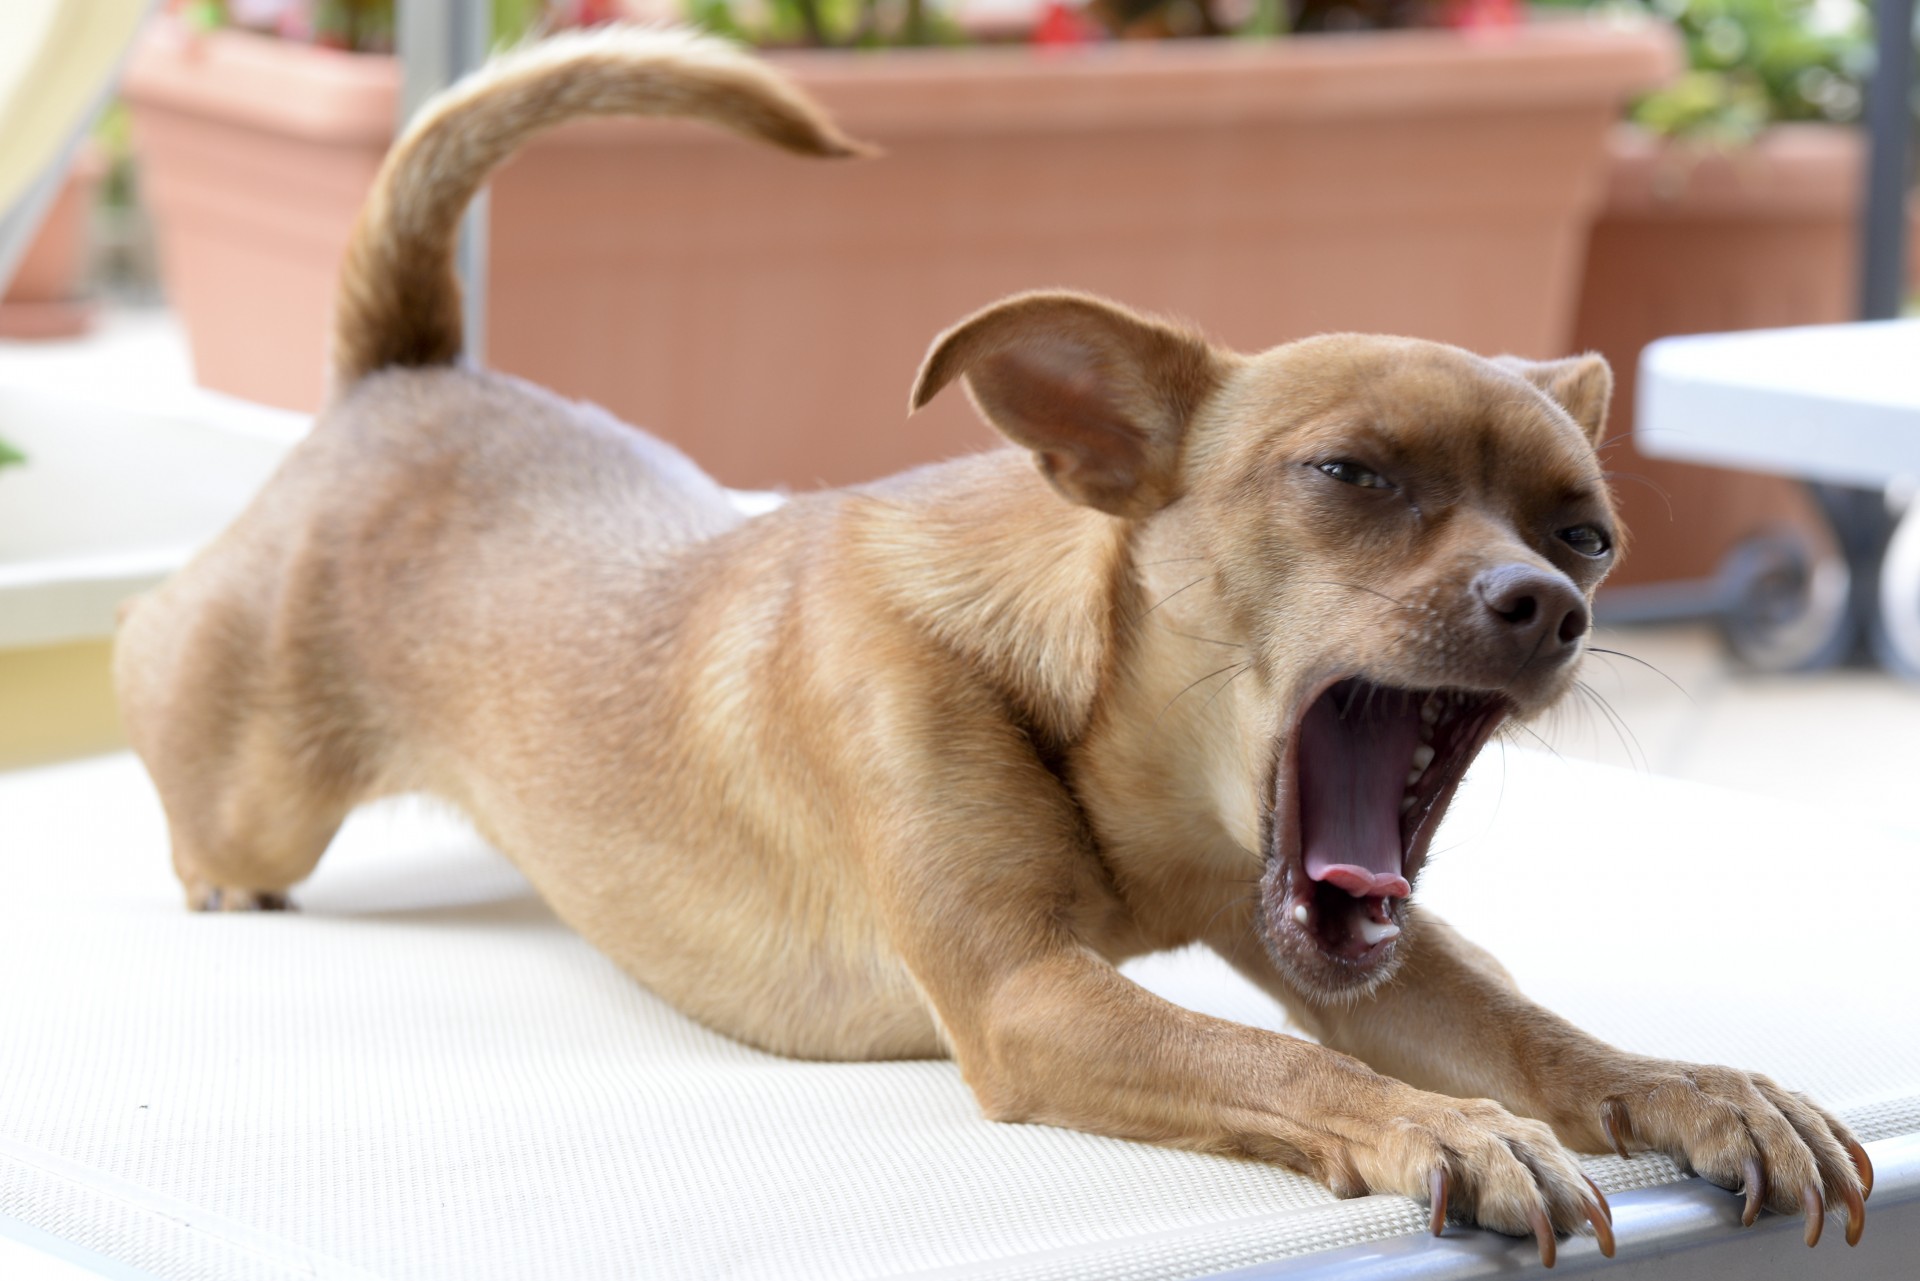 chihuahua yawn dog free photo